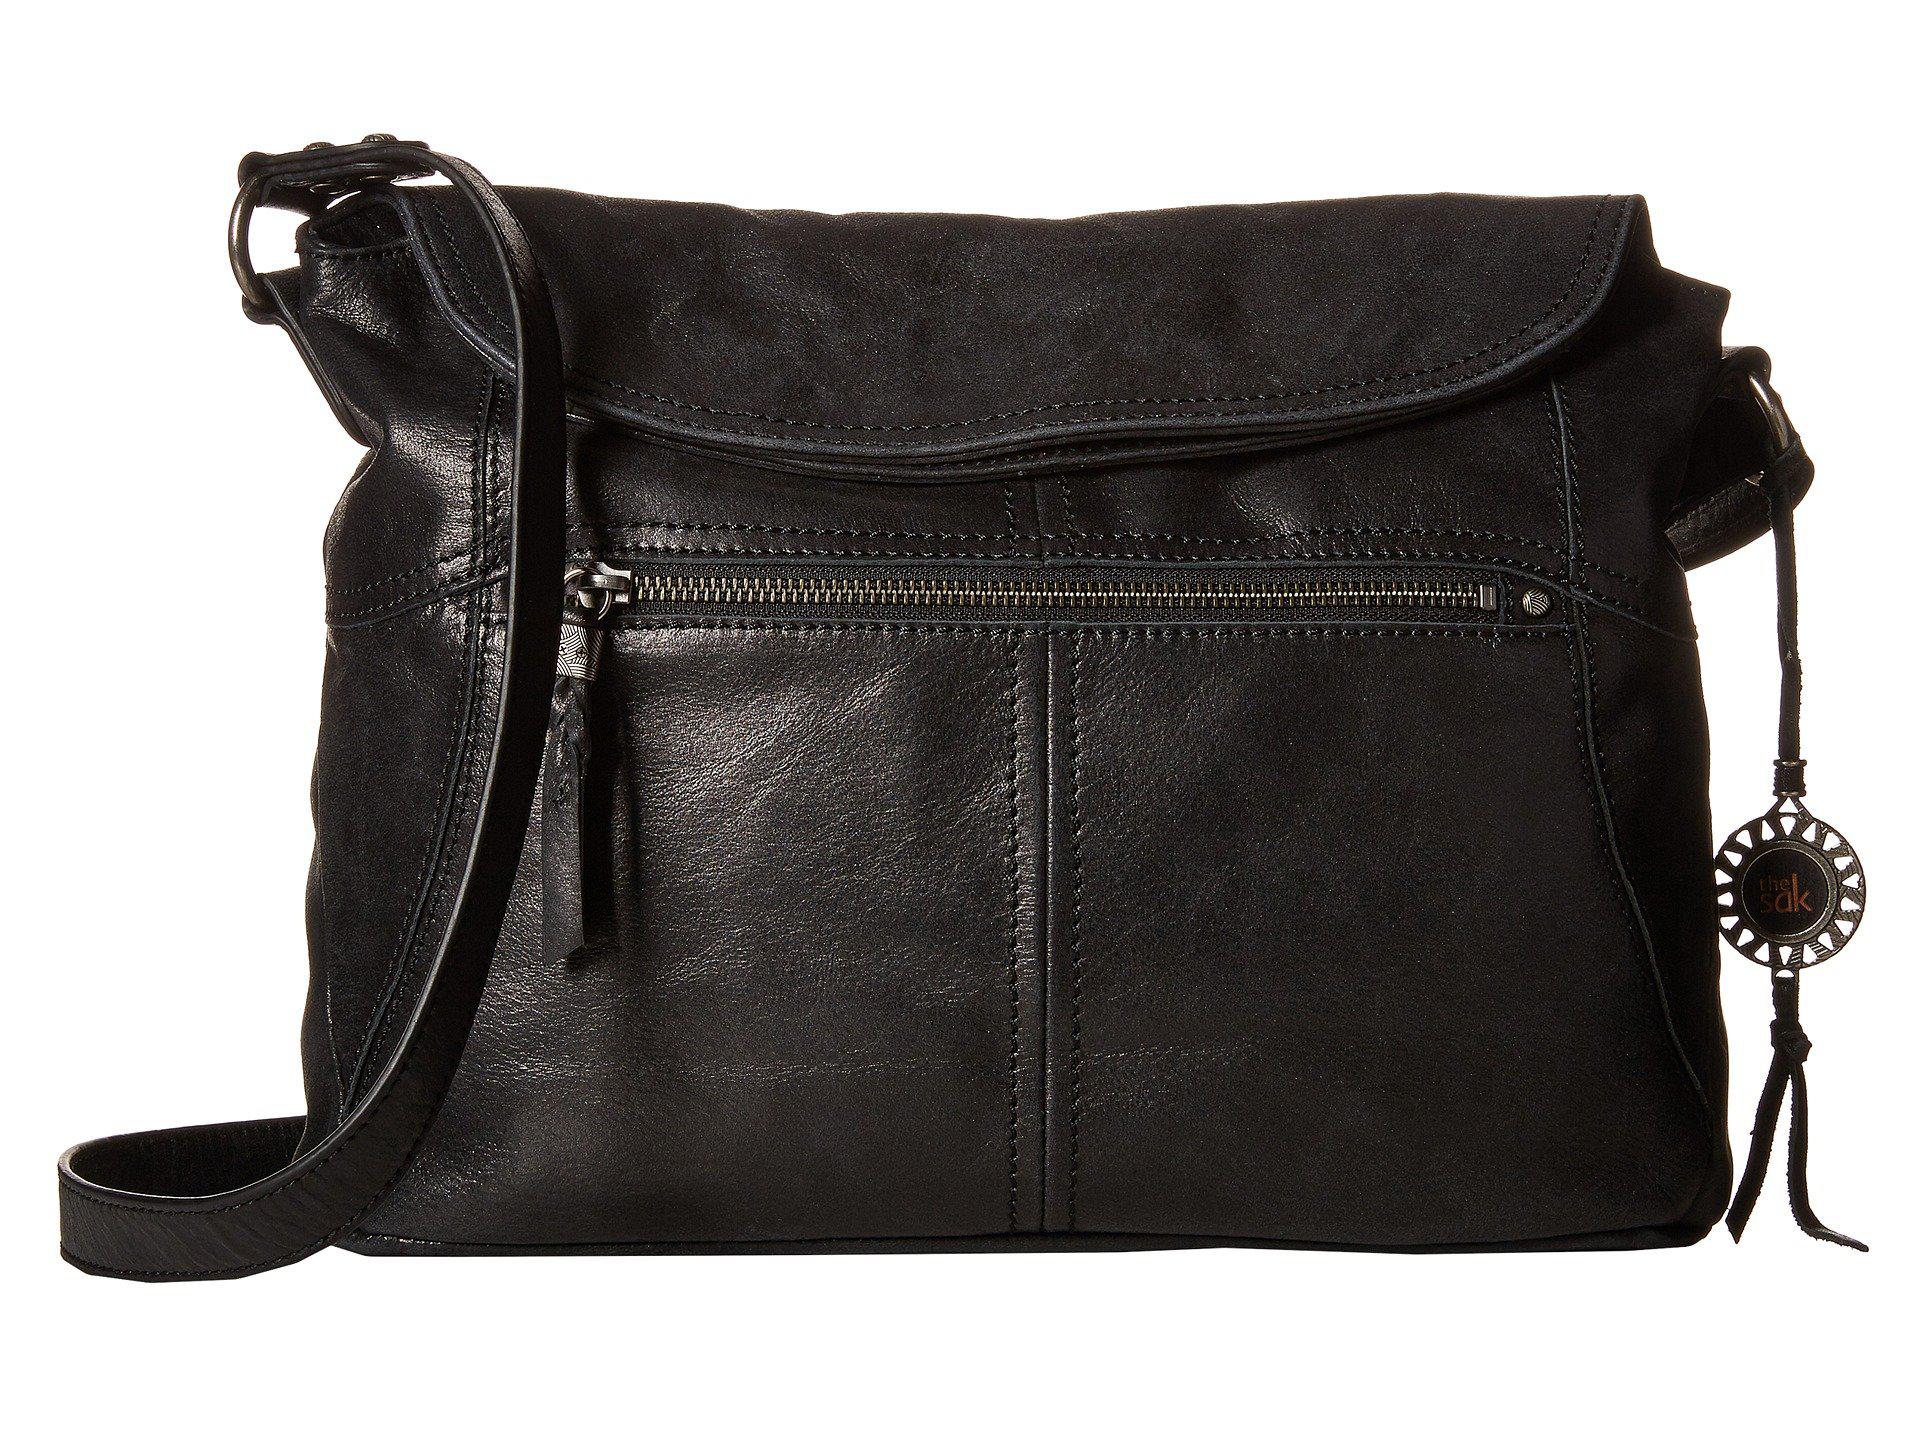 Lyst - The Sak Esperato Flap Hobo (black) Hobo Handbags in Black